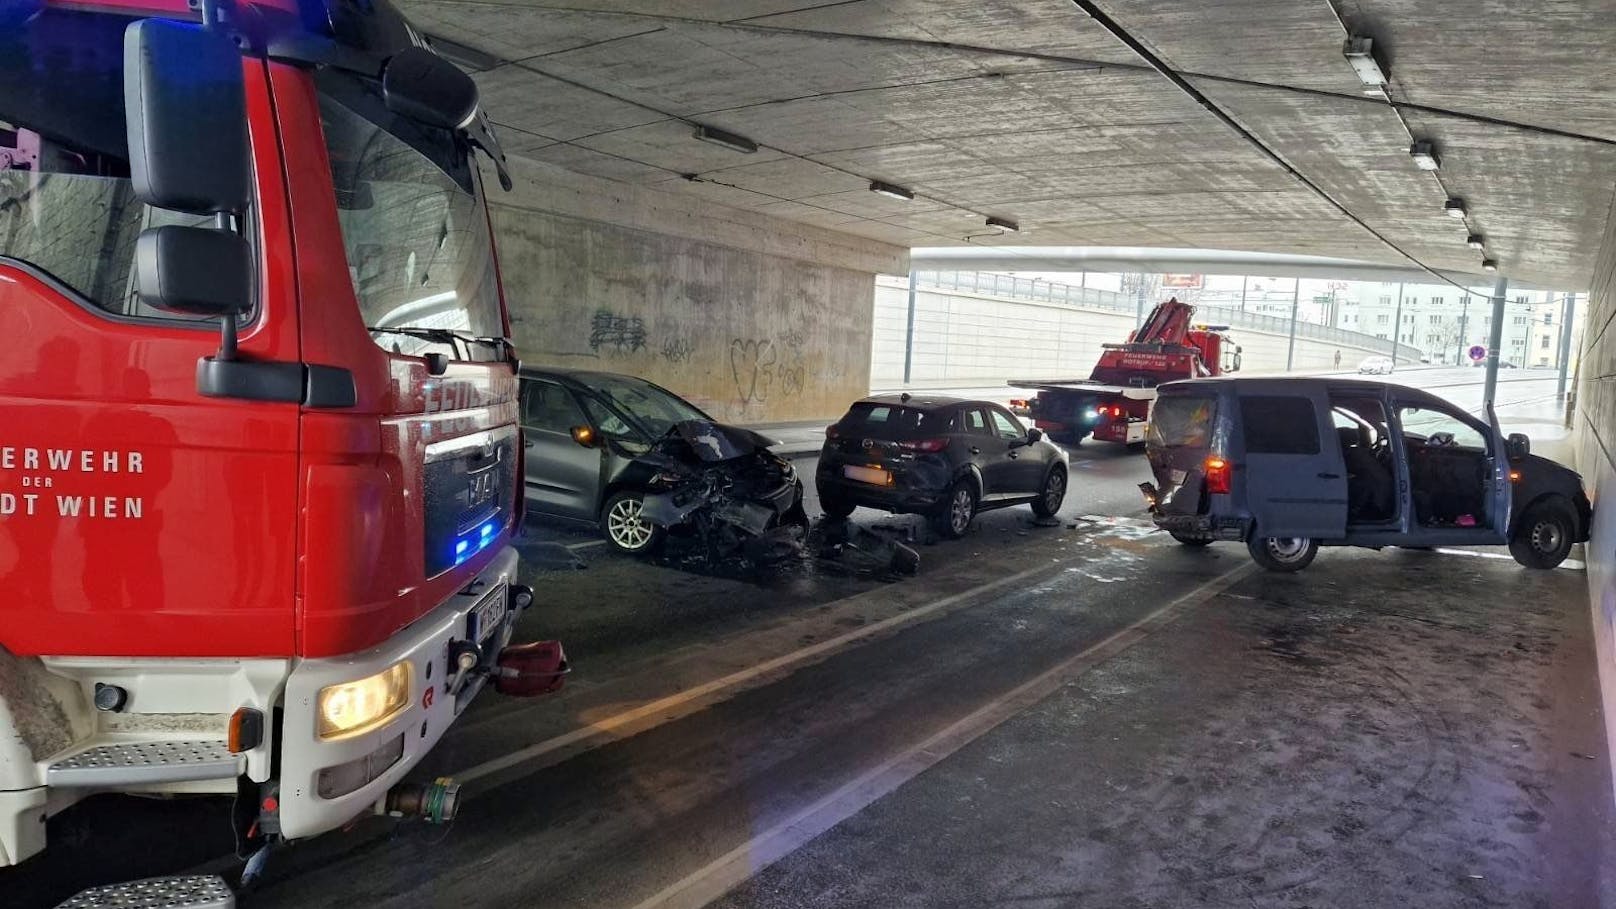 Heftiger Crash in Wien – mehrere Fahrzeuge beteiligt